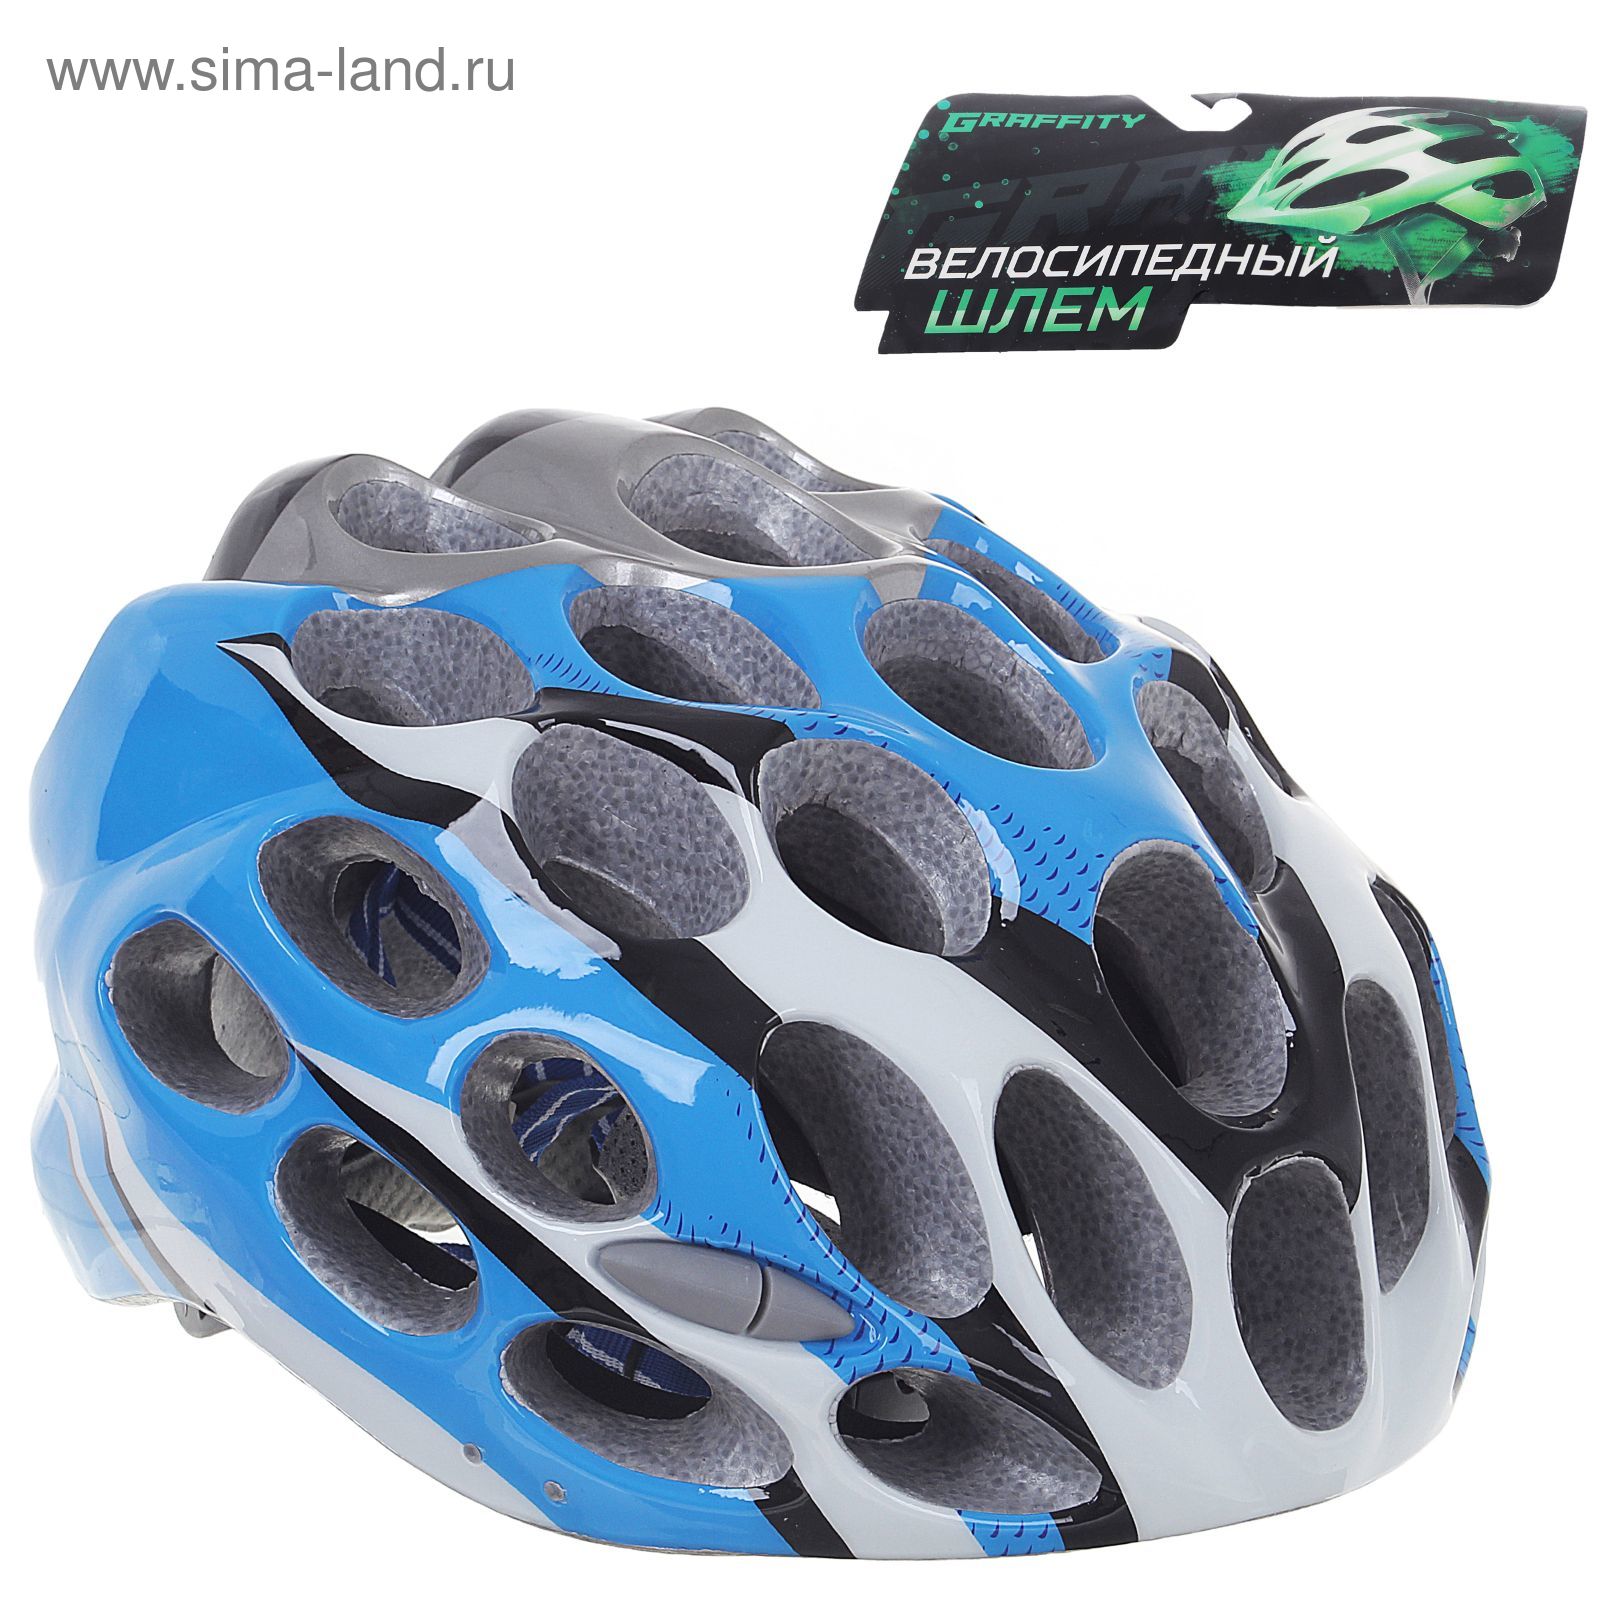 Шлем велосипедиста взрослый ОТ-T39, голубой, диаметр 54 см